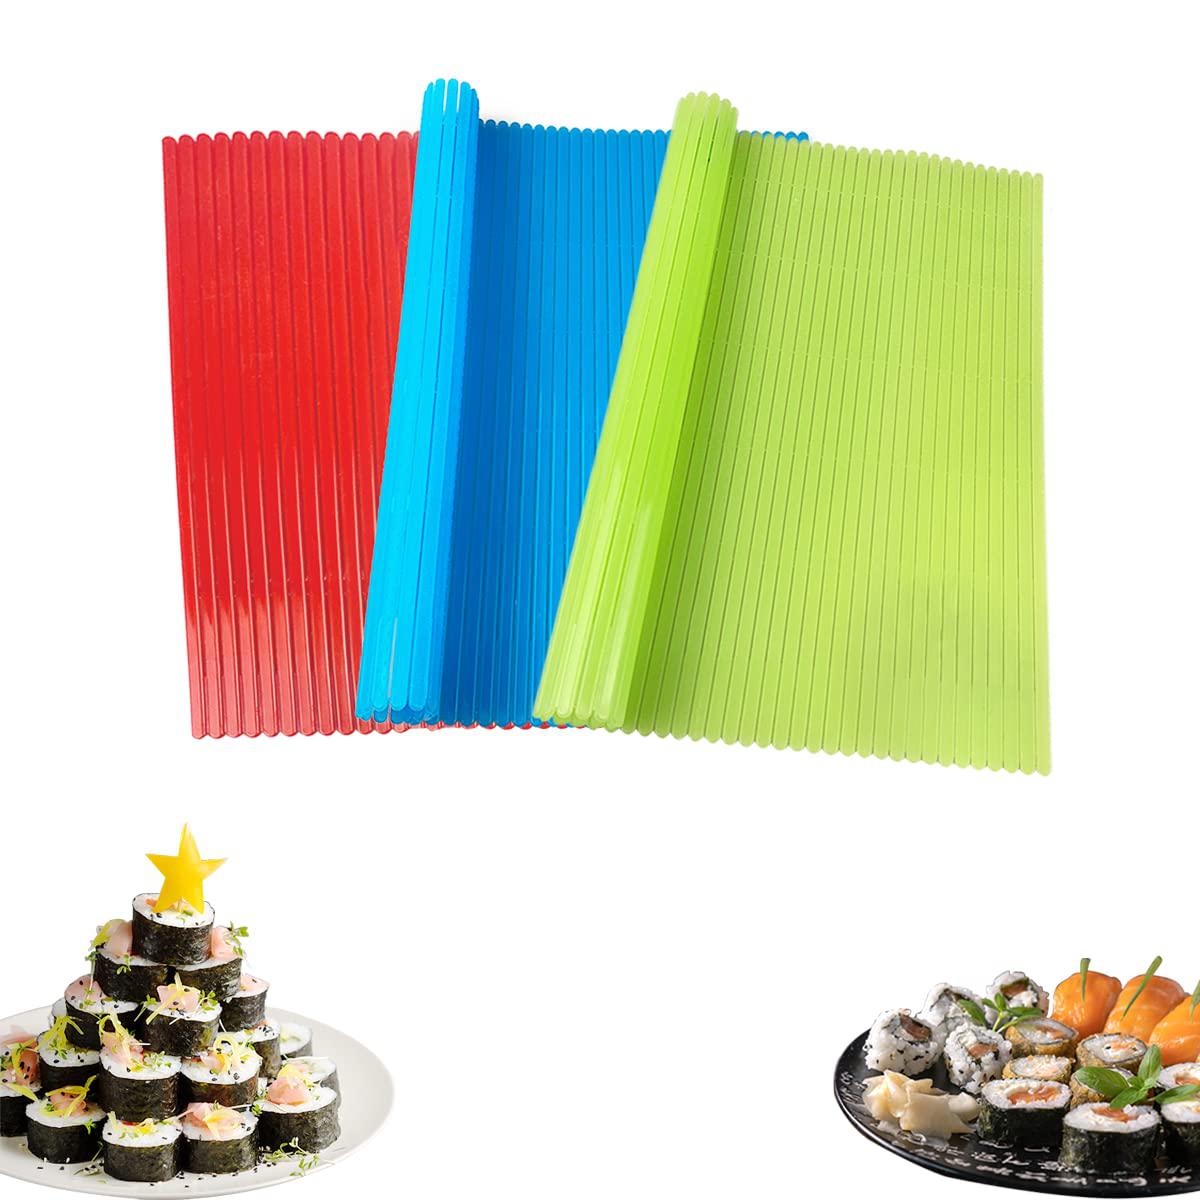 Esamploe 3 Pcs Sushi Rolling Mat,8.27in x 9.06in Sushi Mat Plastic,Non-Stick Sushi Making Mat,Red, Green and Blue Sushi Mats,Durable Sushi Mat